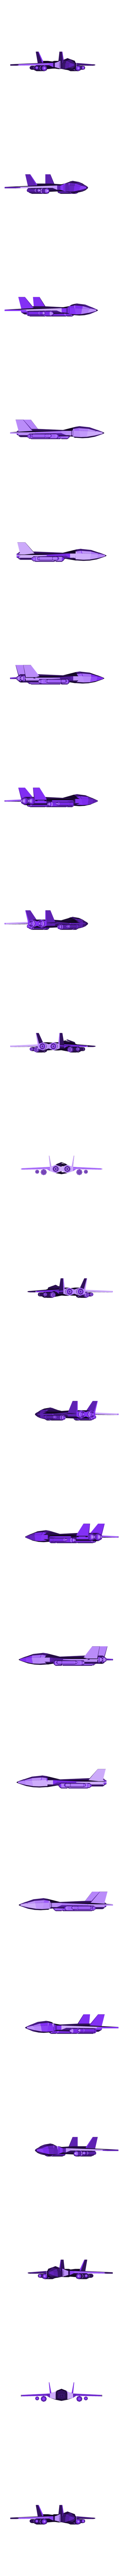 Jet_01.obj Télécharger fichier OBJ gratuit Jet / avion / avion • Design pour impression 3D, Colorful3D